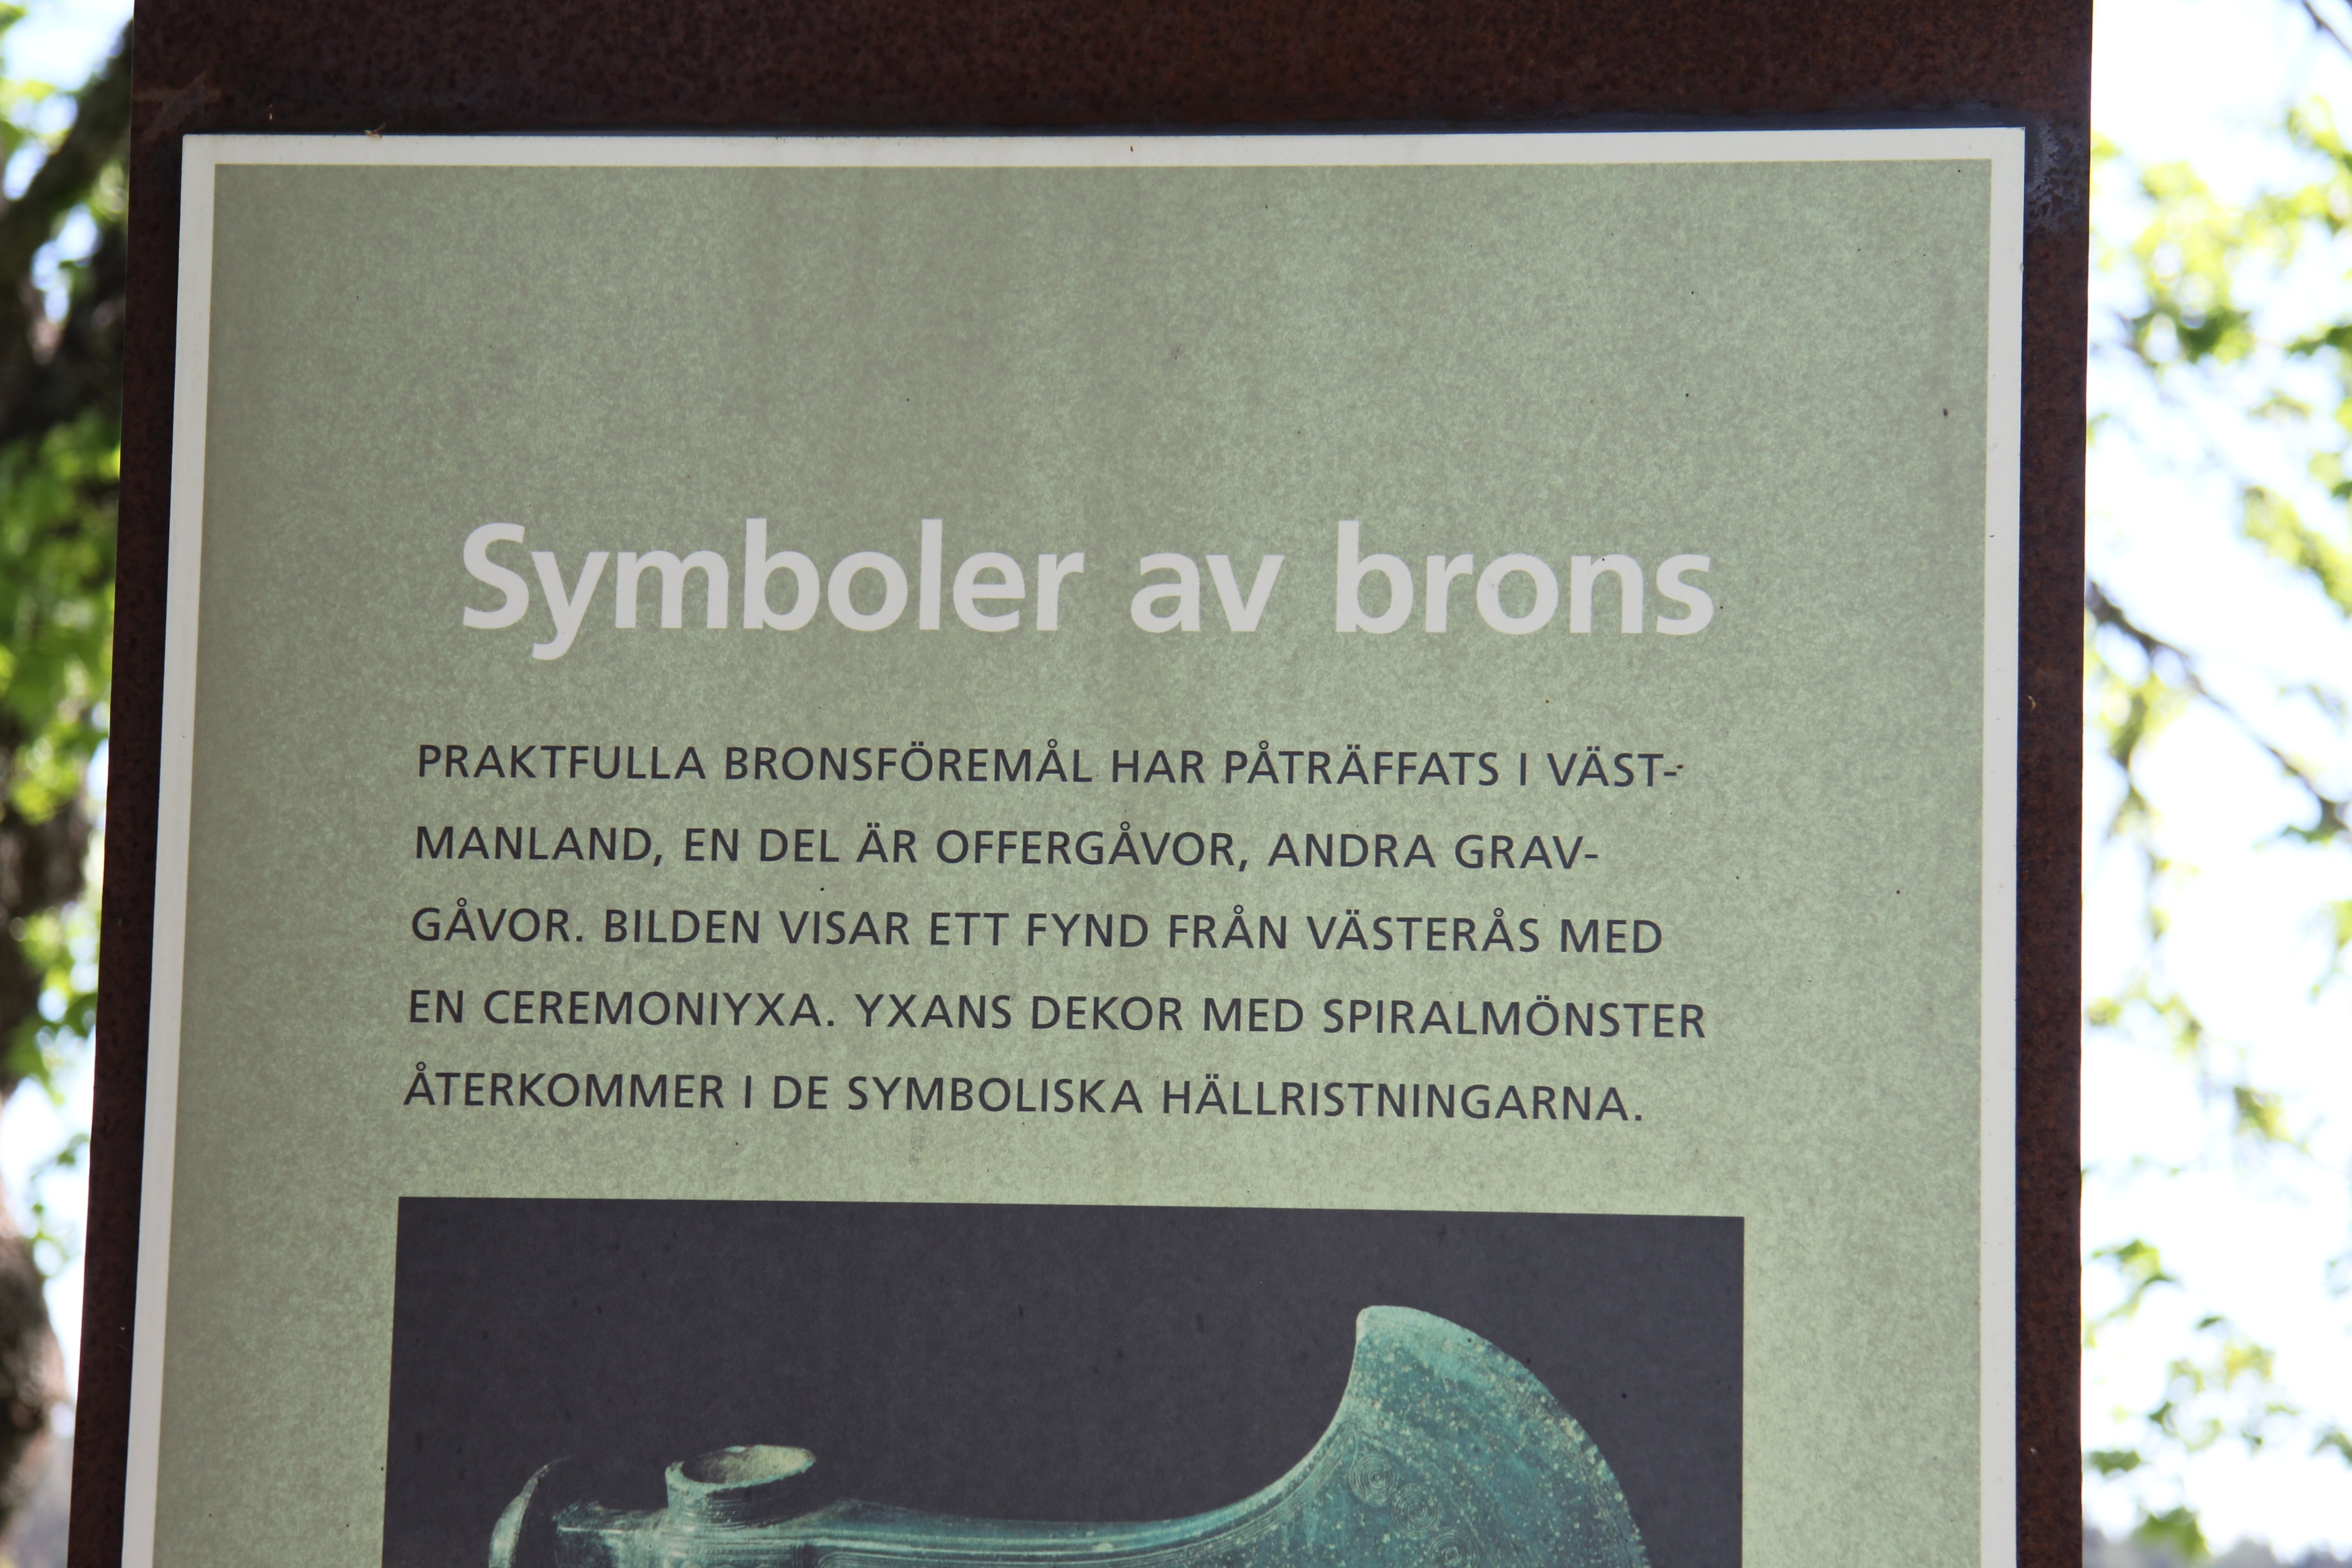 Bild på informationskylt som handlar om symboler av brons.